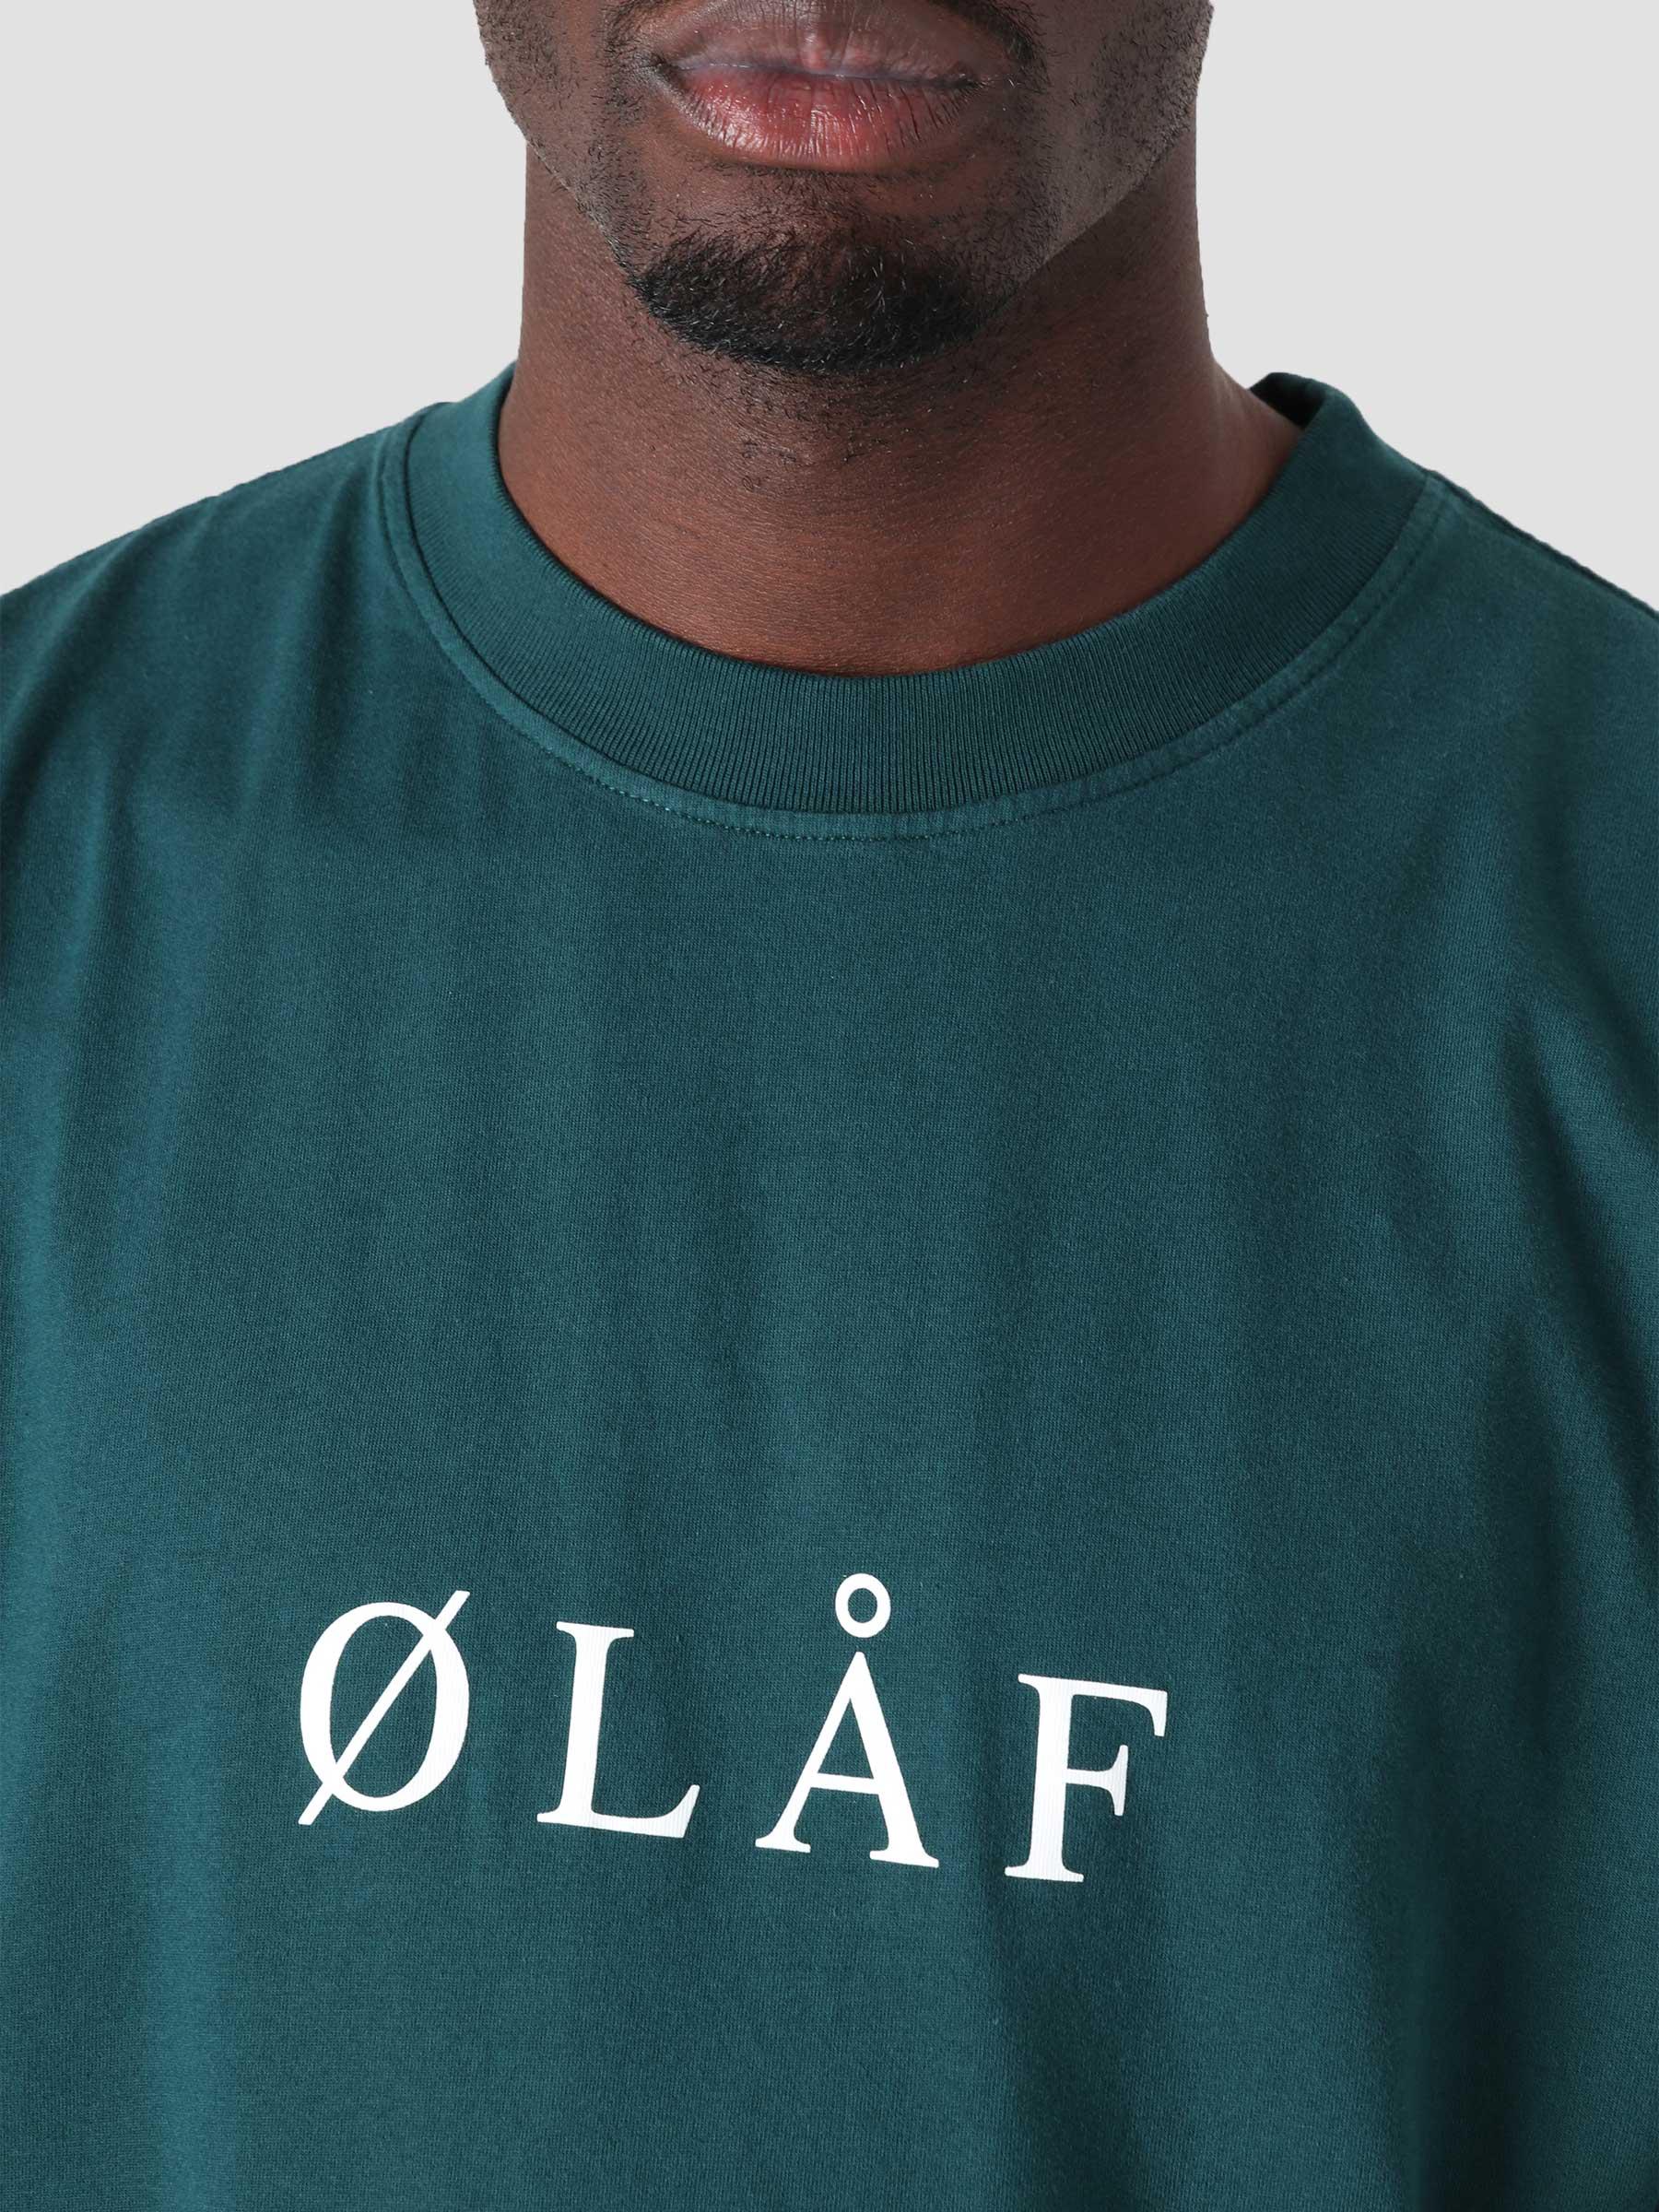 OLAF Serif T-Shirt Petrol